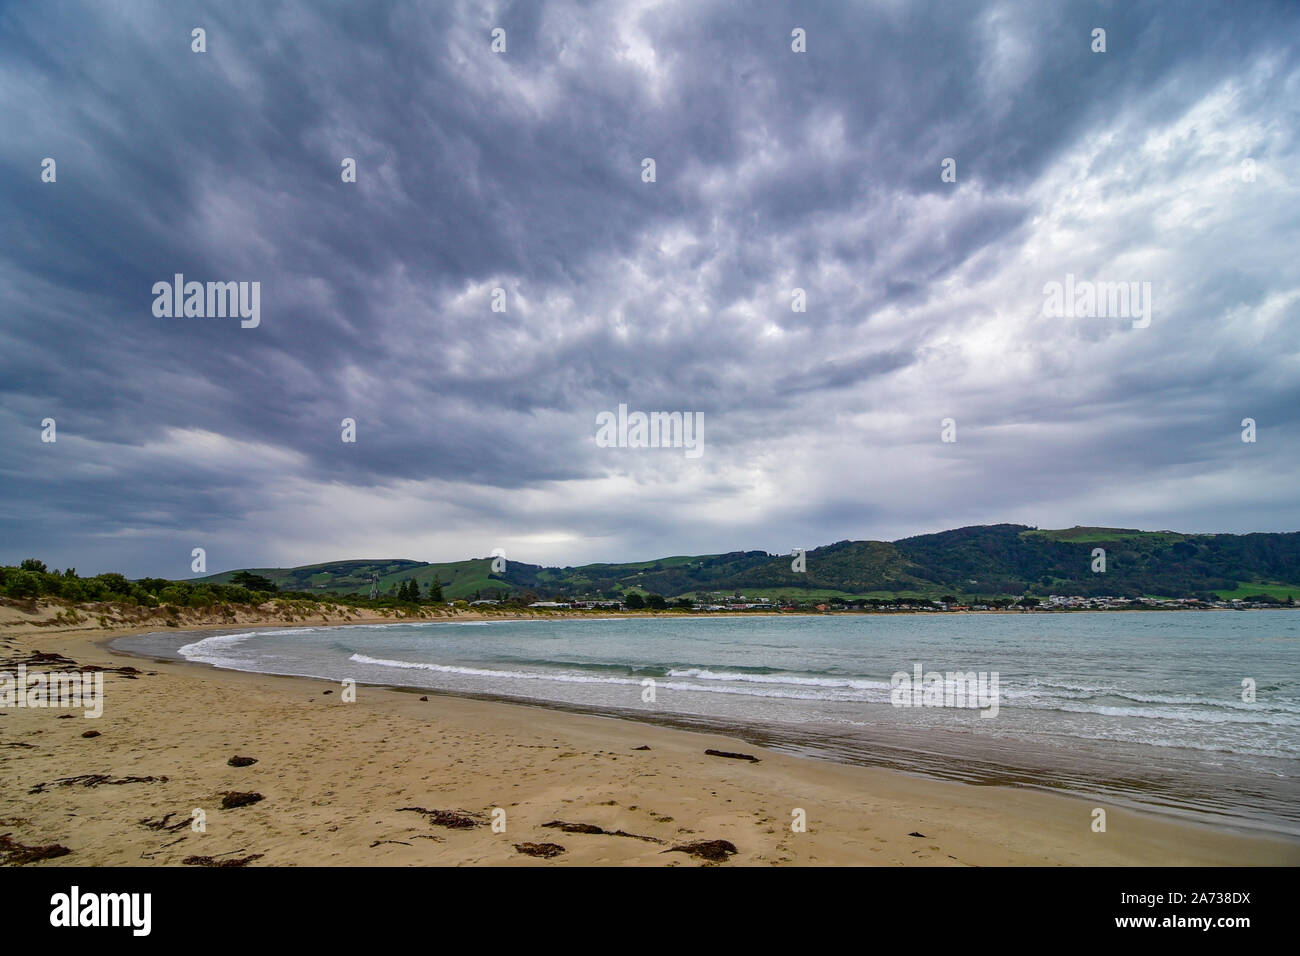 Storm approaching Apollo Bay, Victoria, Australia Stock Photo